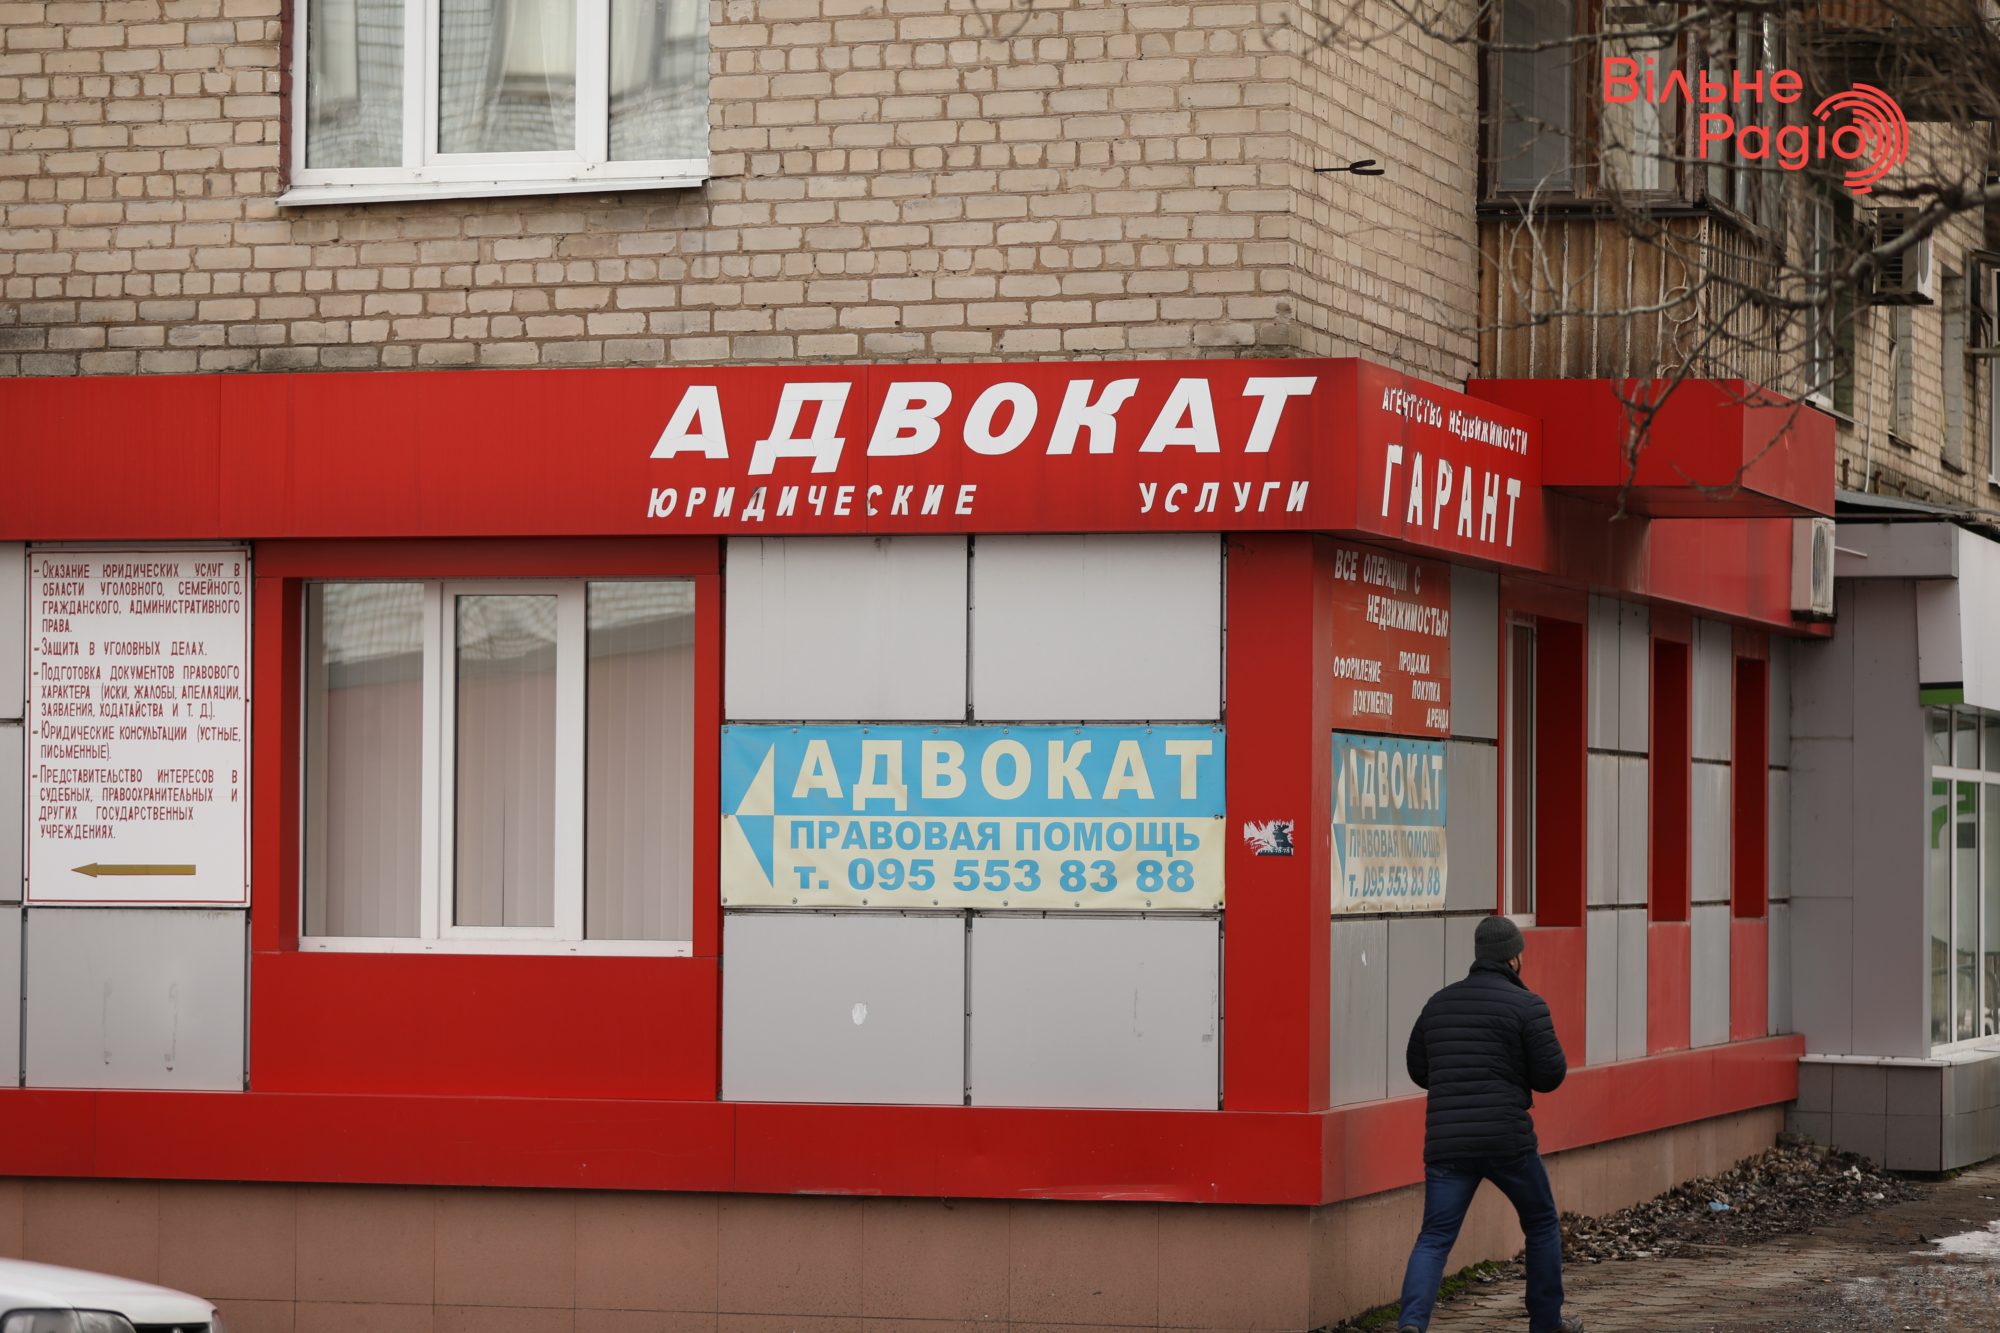 Глав 7 громад Донбасса просят убрать рекламу, которая нарушает “языковой” закон. Какая ситуация в Бахмуте”(ФОТО) 12